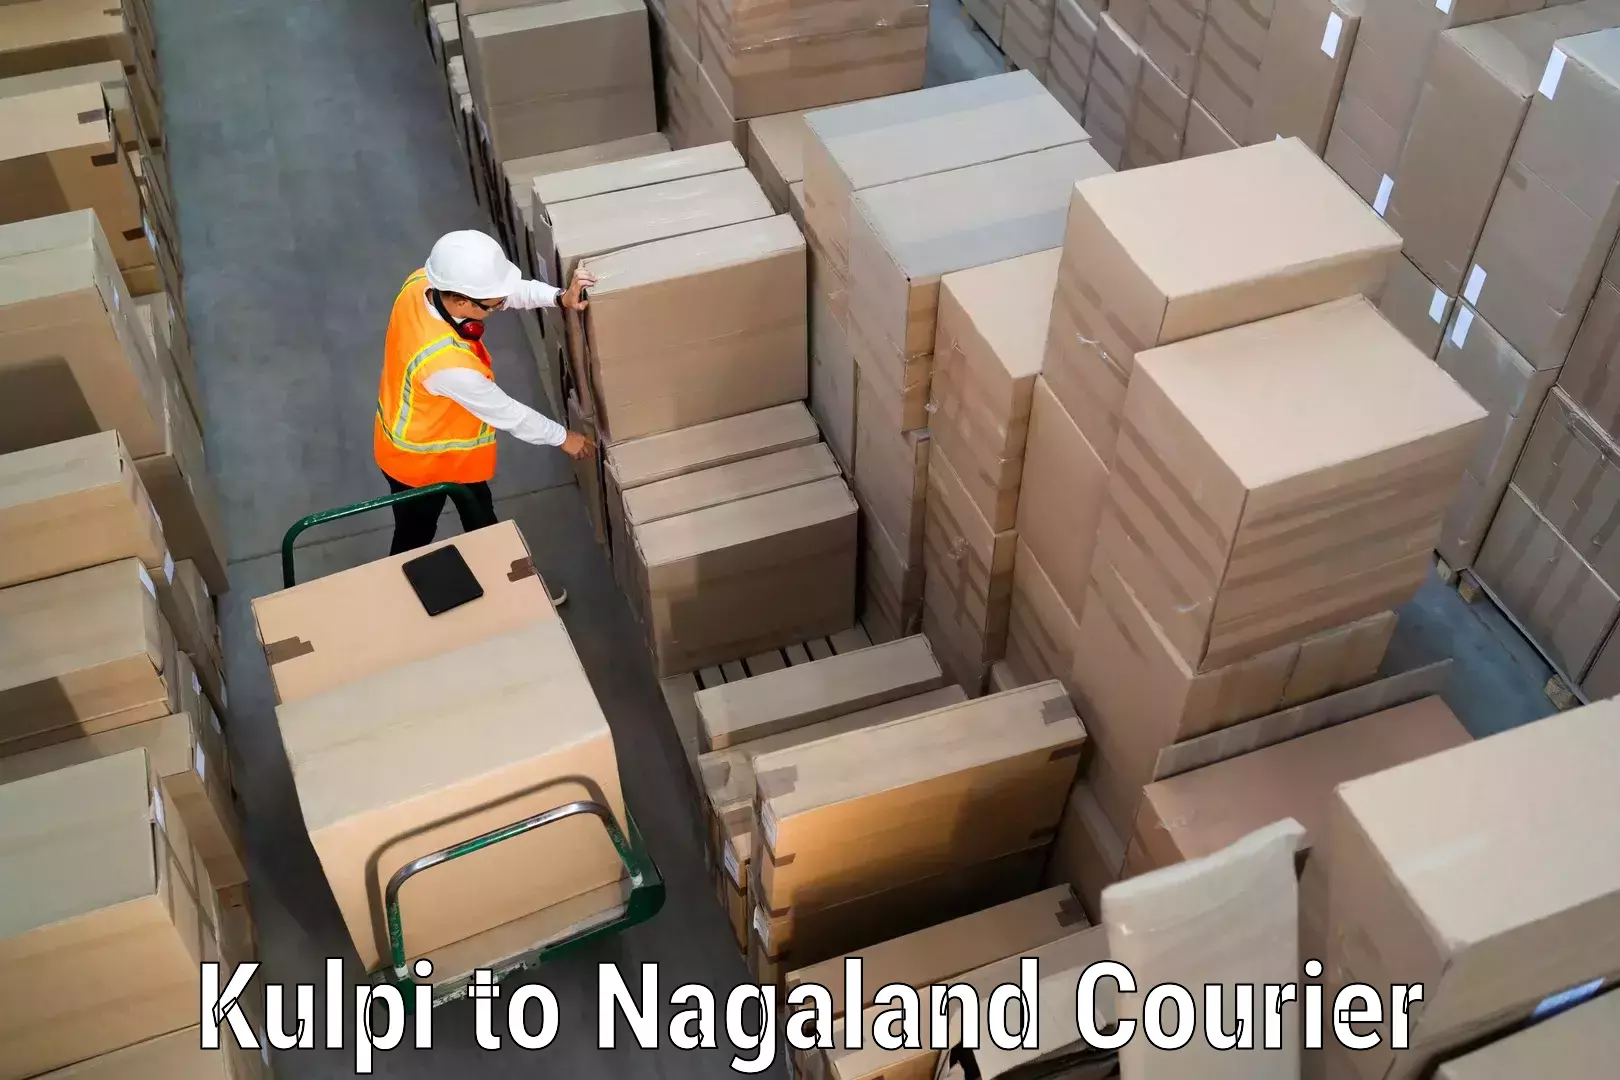 Customized shipping options Kulpi to Nagaland